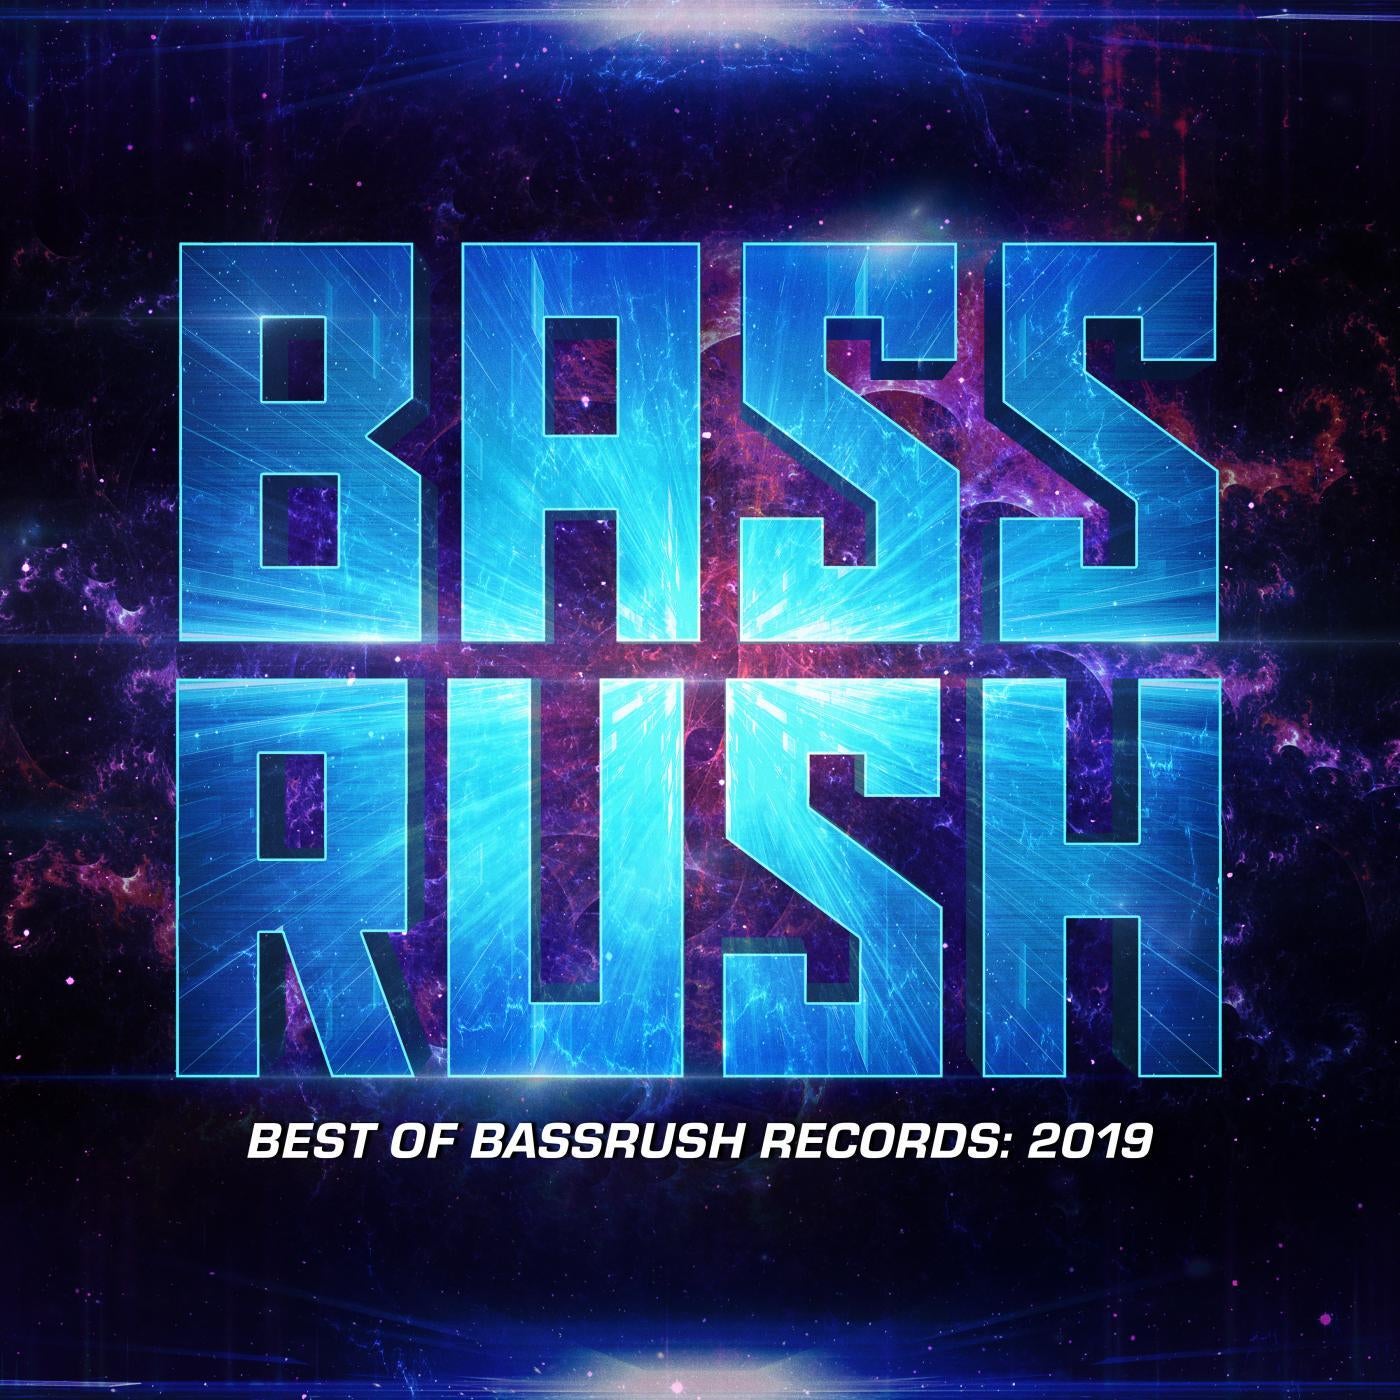 Best of Bassrush: 2019